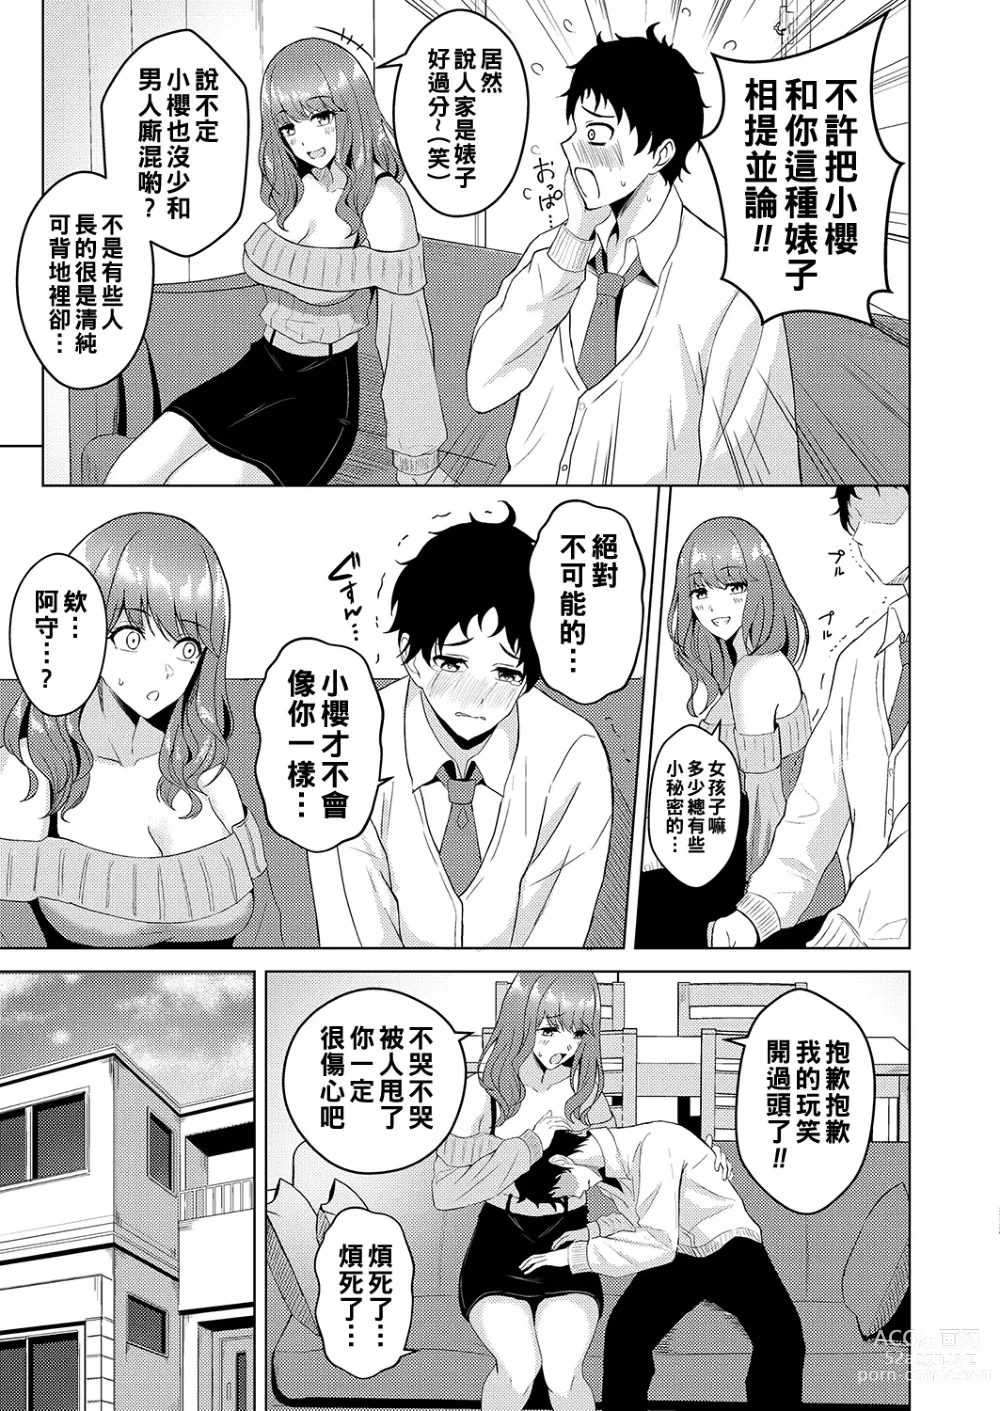 Page 3 of manga Nagusame Lesson